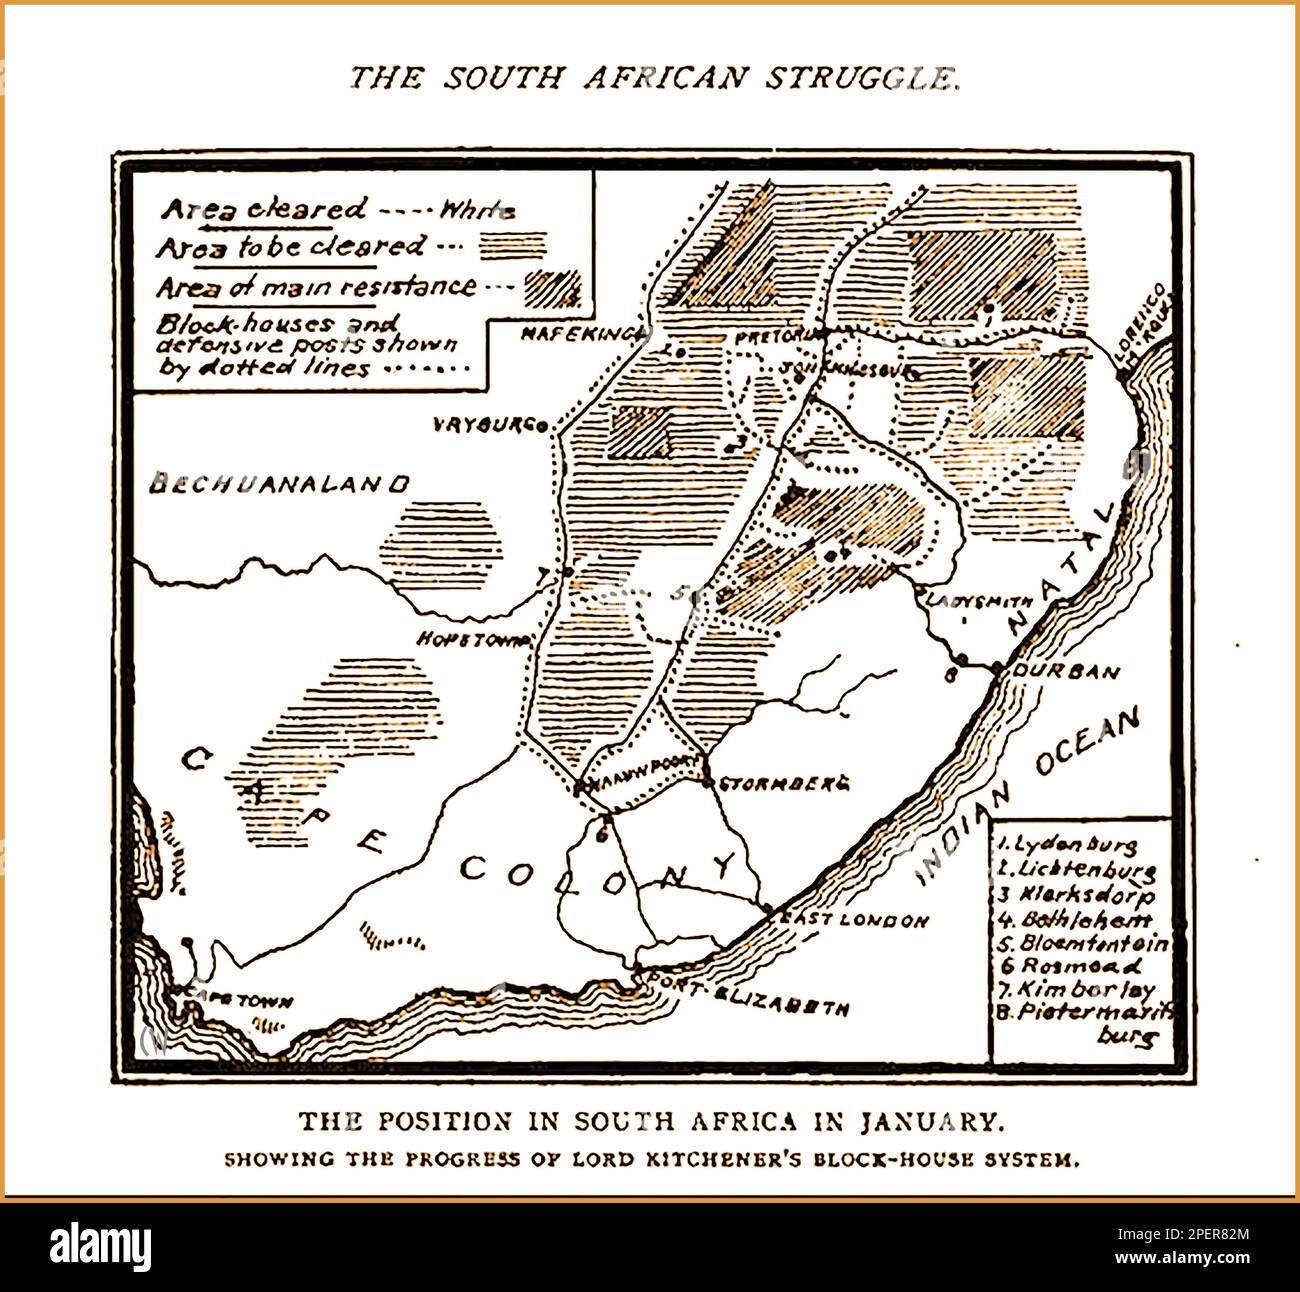 Eine 1892 gedruckte Karte, die den Zustand Südafrikas während der Zeit der Boer-Kriege zeigt -- Een gedrukte kaart uit 1892 met de Staat Zuid-Afrika tijdens de Period van de Boerenoorlogen -- Stockfoto